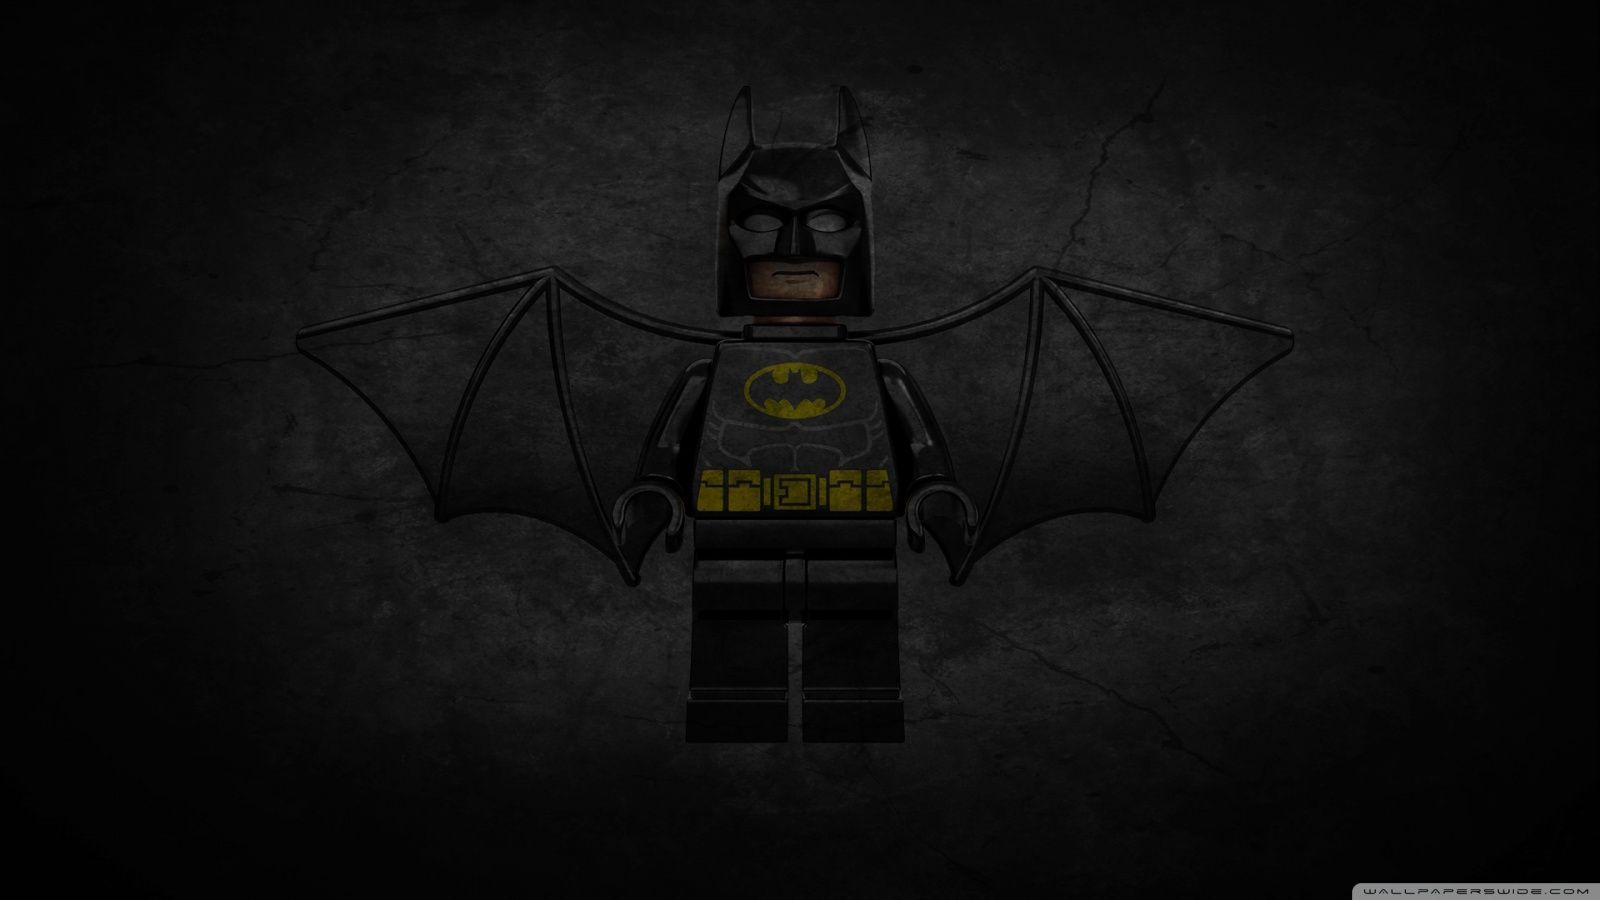 Batman Lego Wallpaper Apk Download for Android Latest version 100 com batmanlegowallpaper